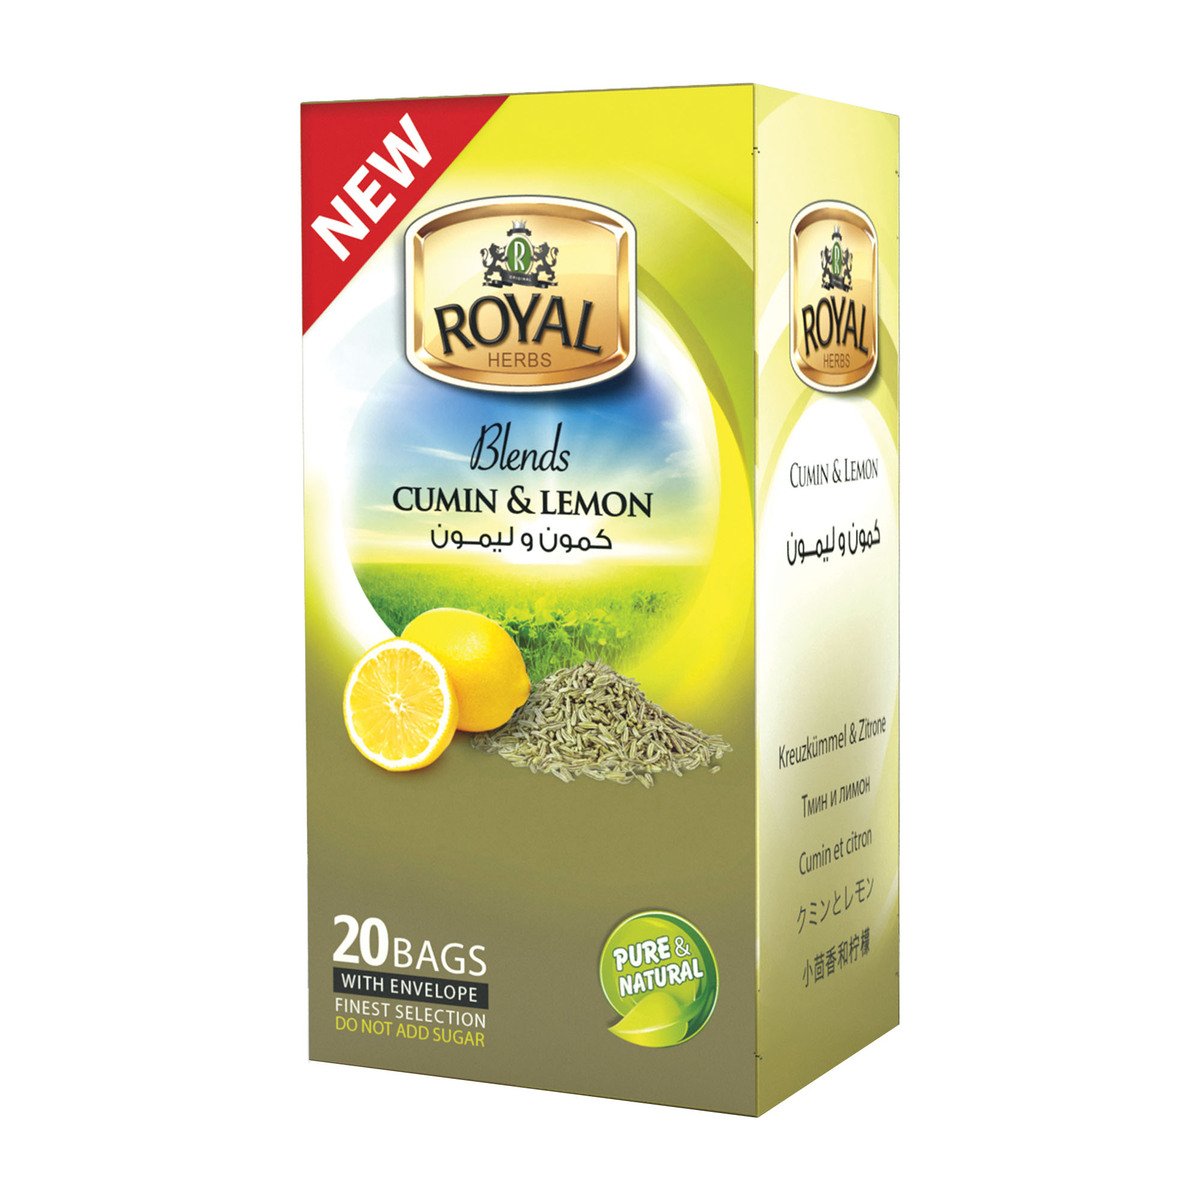 Royal Herbs Blends Cumin & Lemon Tea 20 pcs